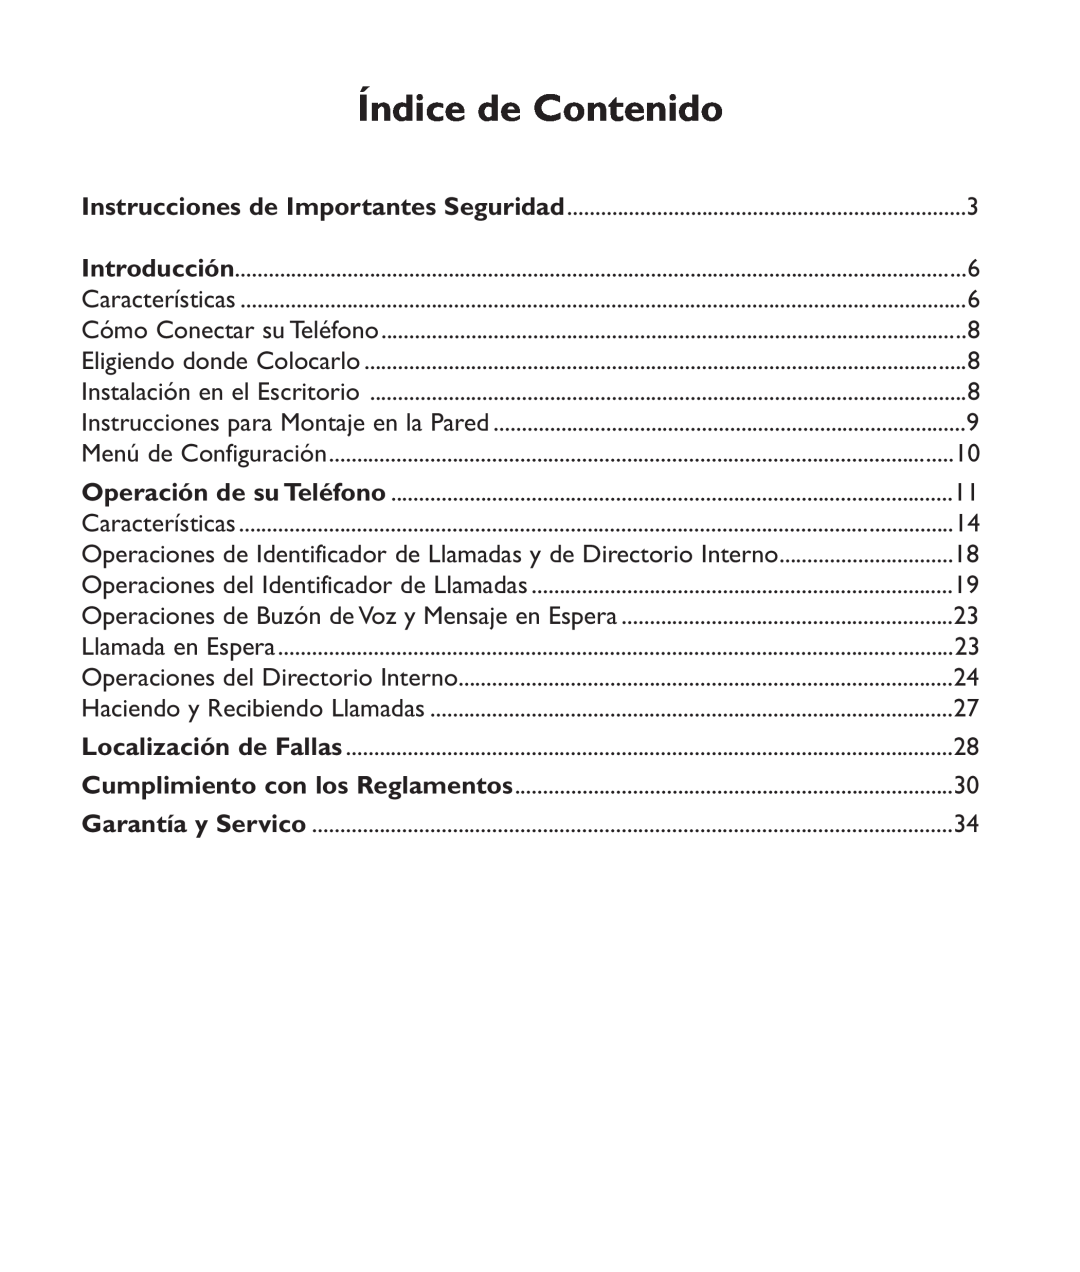 Clarity c2210 manual Índice de Contenido, Operaciones de Identificador de Llamadas y de Directorio Interno 